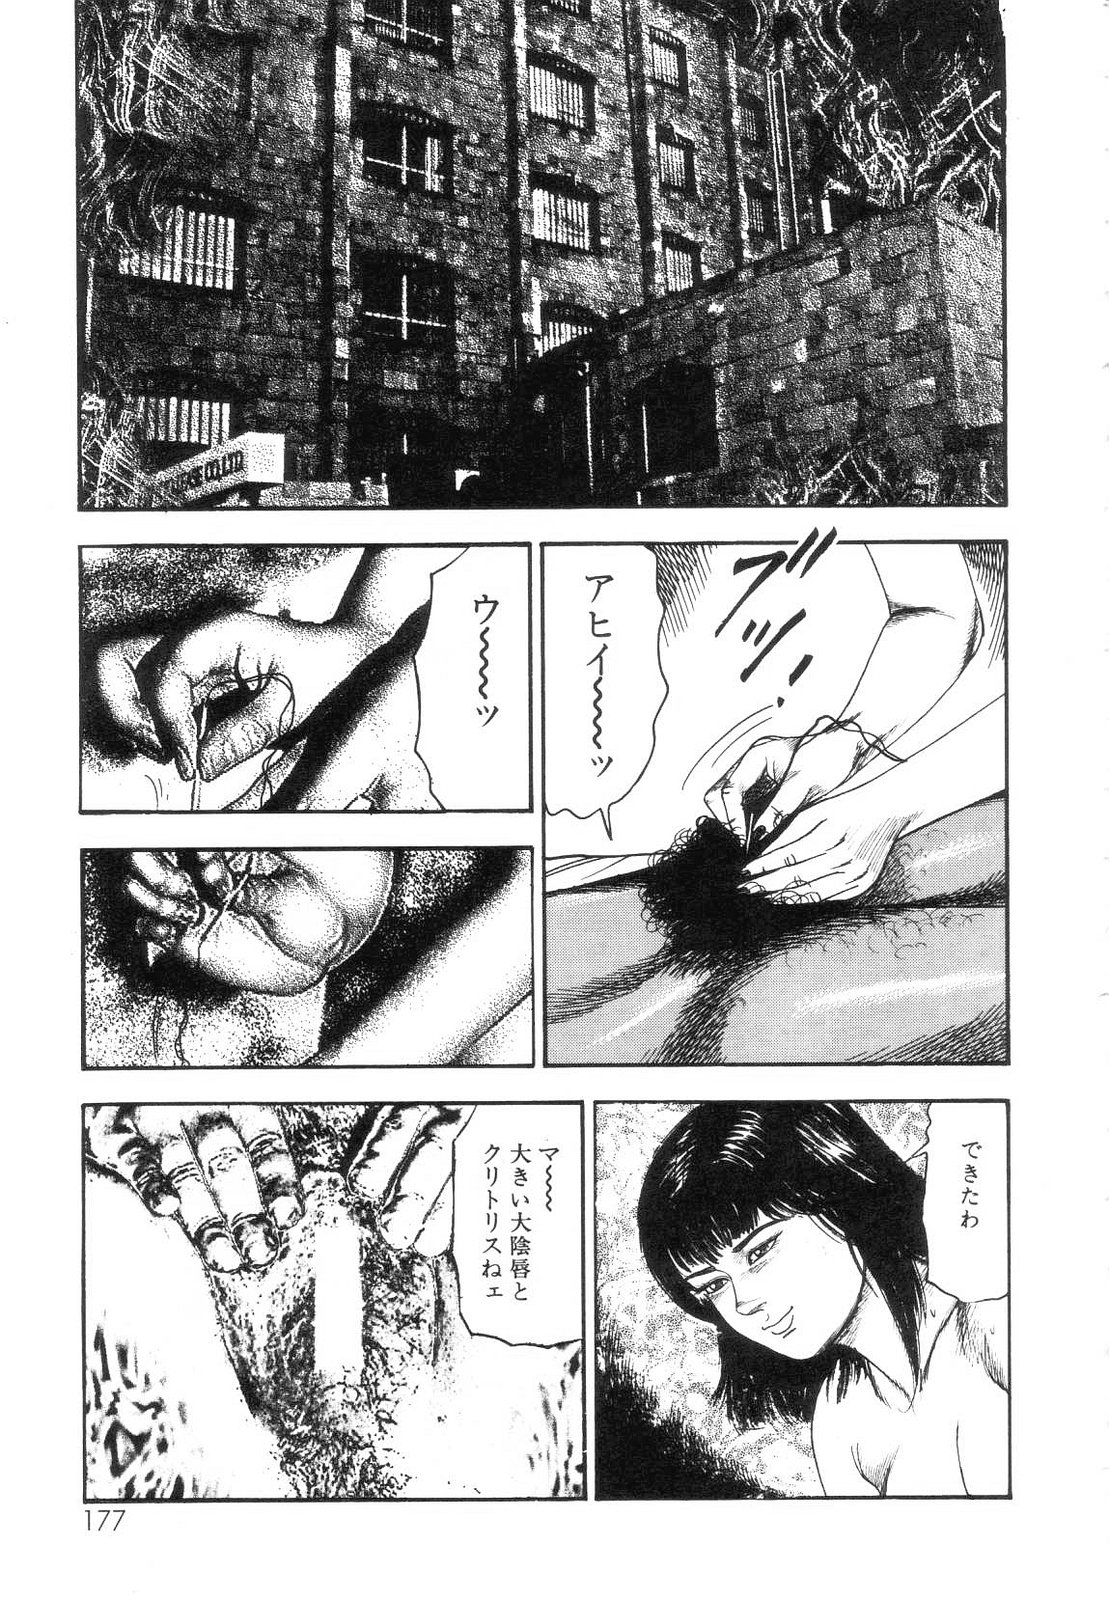 [Sanjou Tomomi] Shiro no Mokushiroku Vol. 7 - Shiiku Ningyou Erika no Shou 178